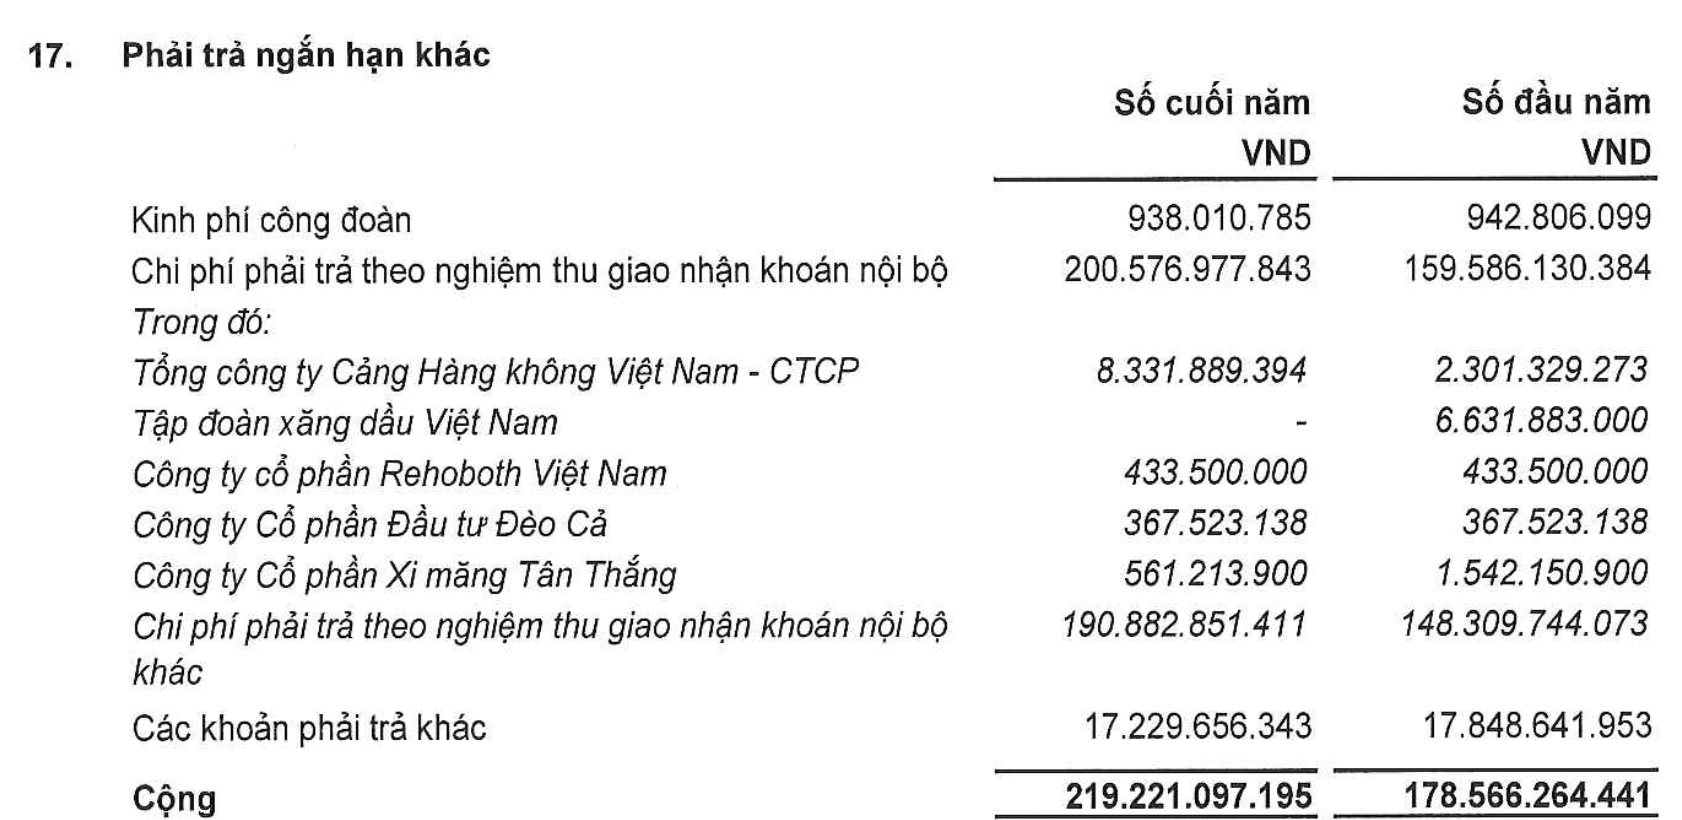 Bất ngờ chứng khoán vừa tăng, sau tin trúng thầu ở sân bay Long Thành: Sở hữu đất vàng trung tâm Hà Nội, nợ gấp 5 lần vốn chủ sở hữu - Ảnh 2.